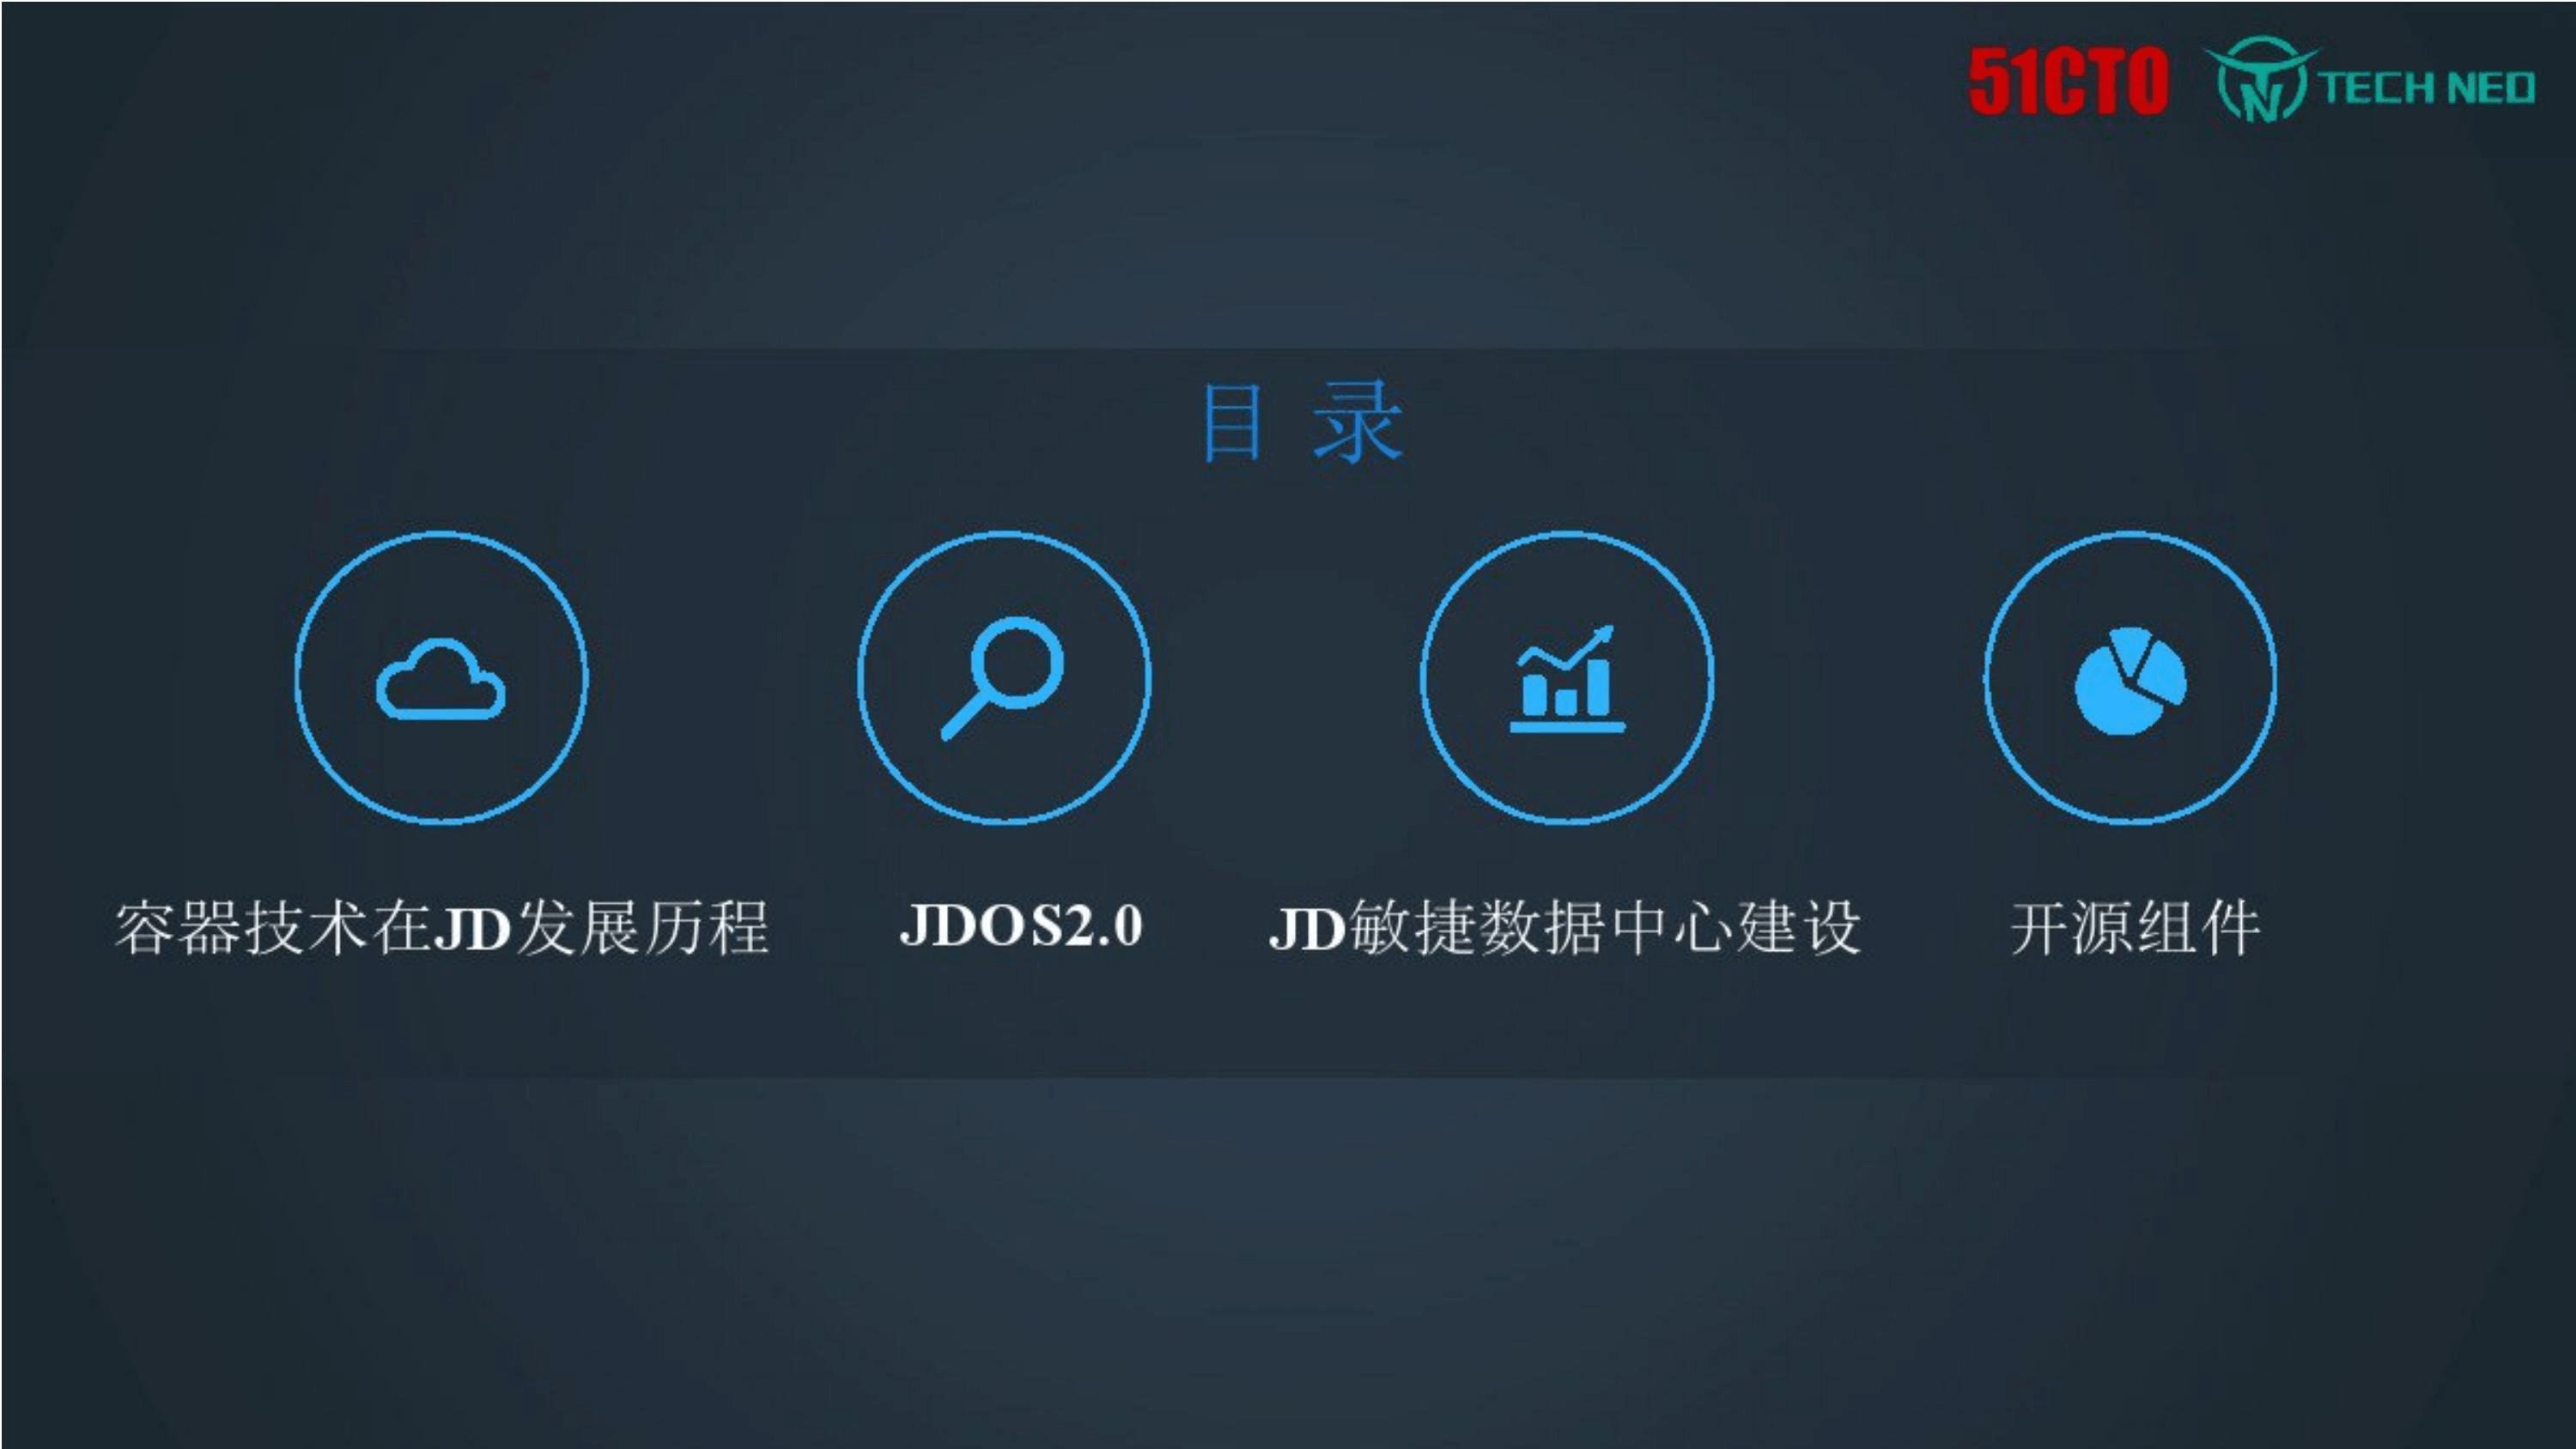 京东JDOS平台与敏捷数据中心架构概述